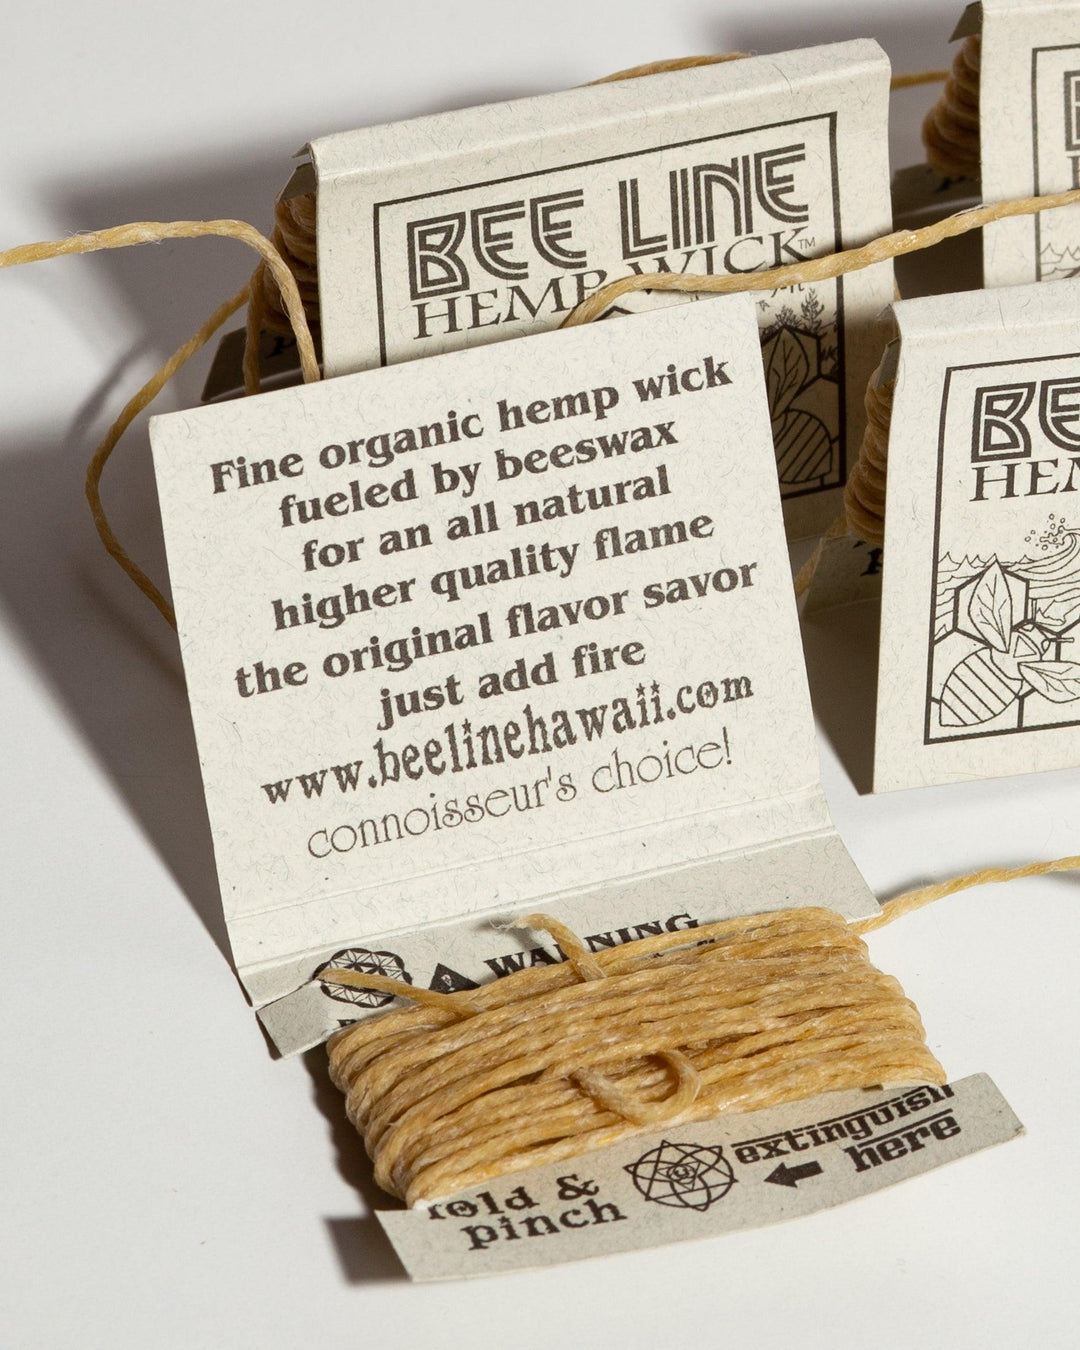 Bee Line hemp wick packages showing organic ingredient list.